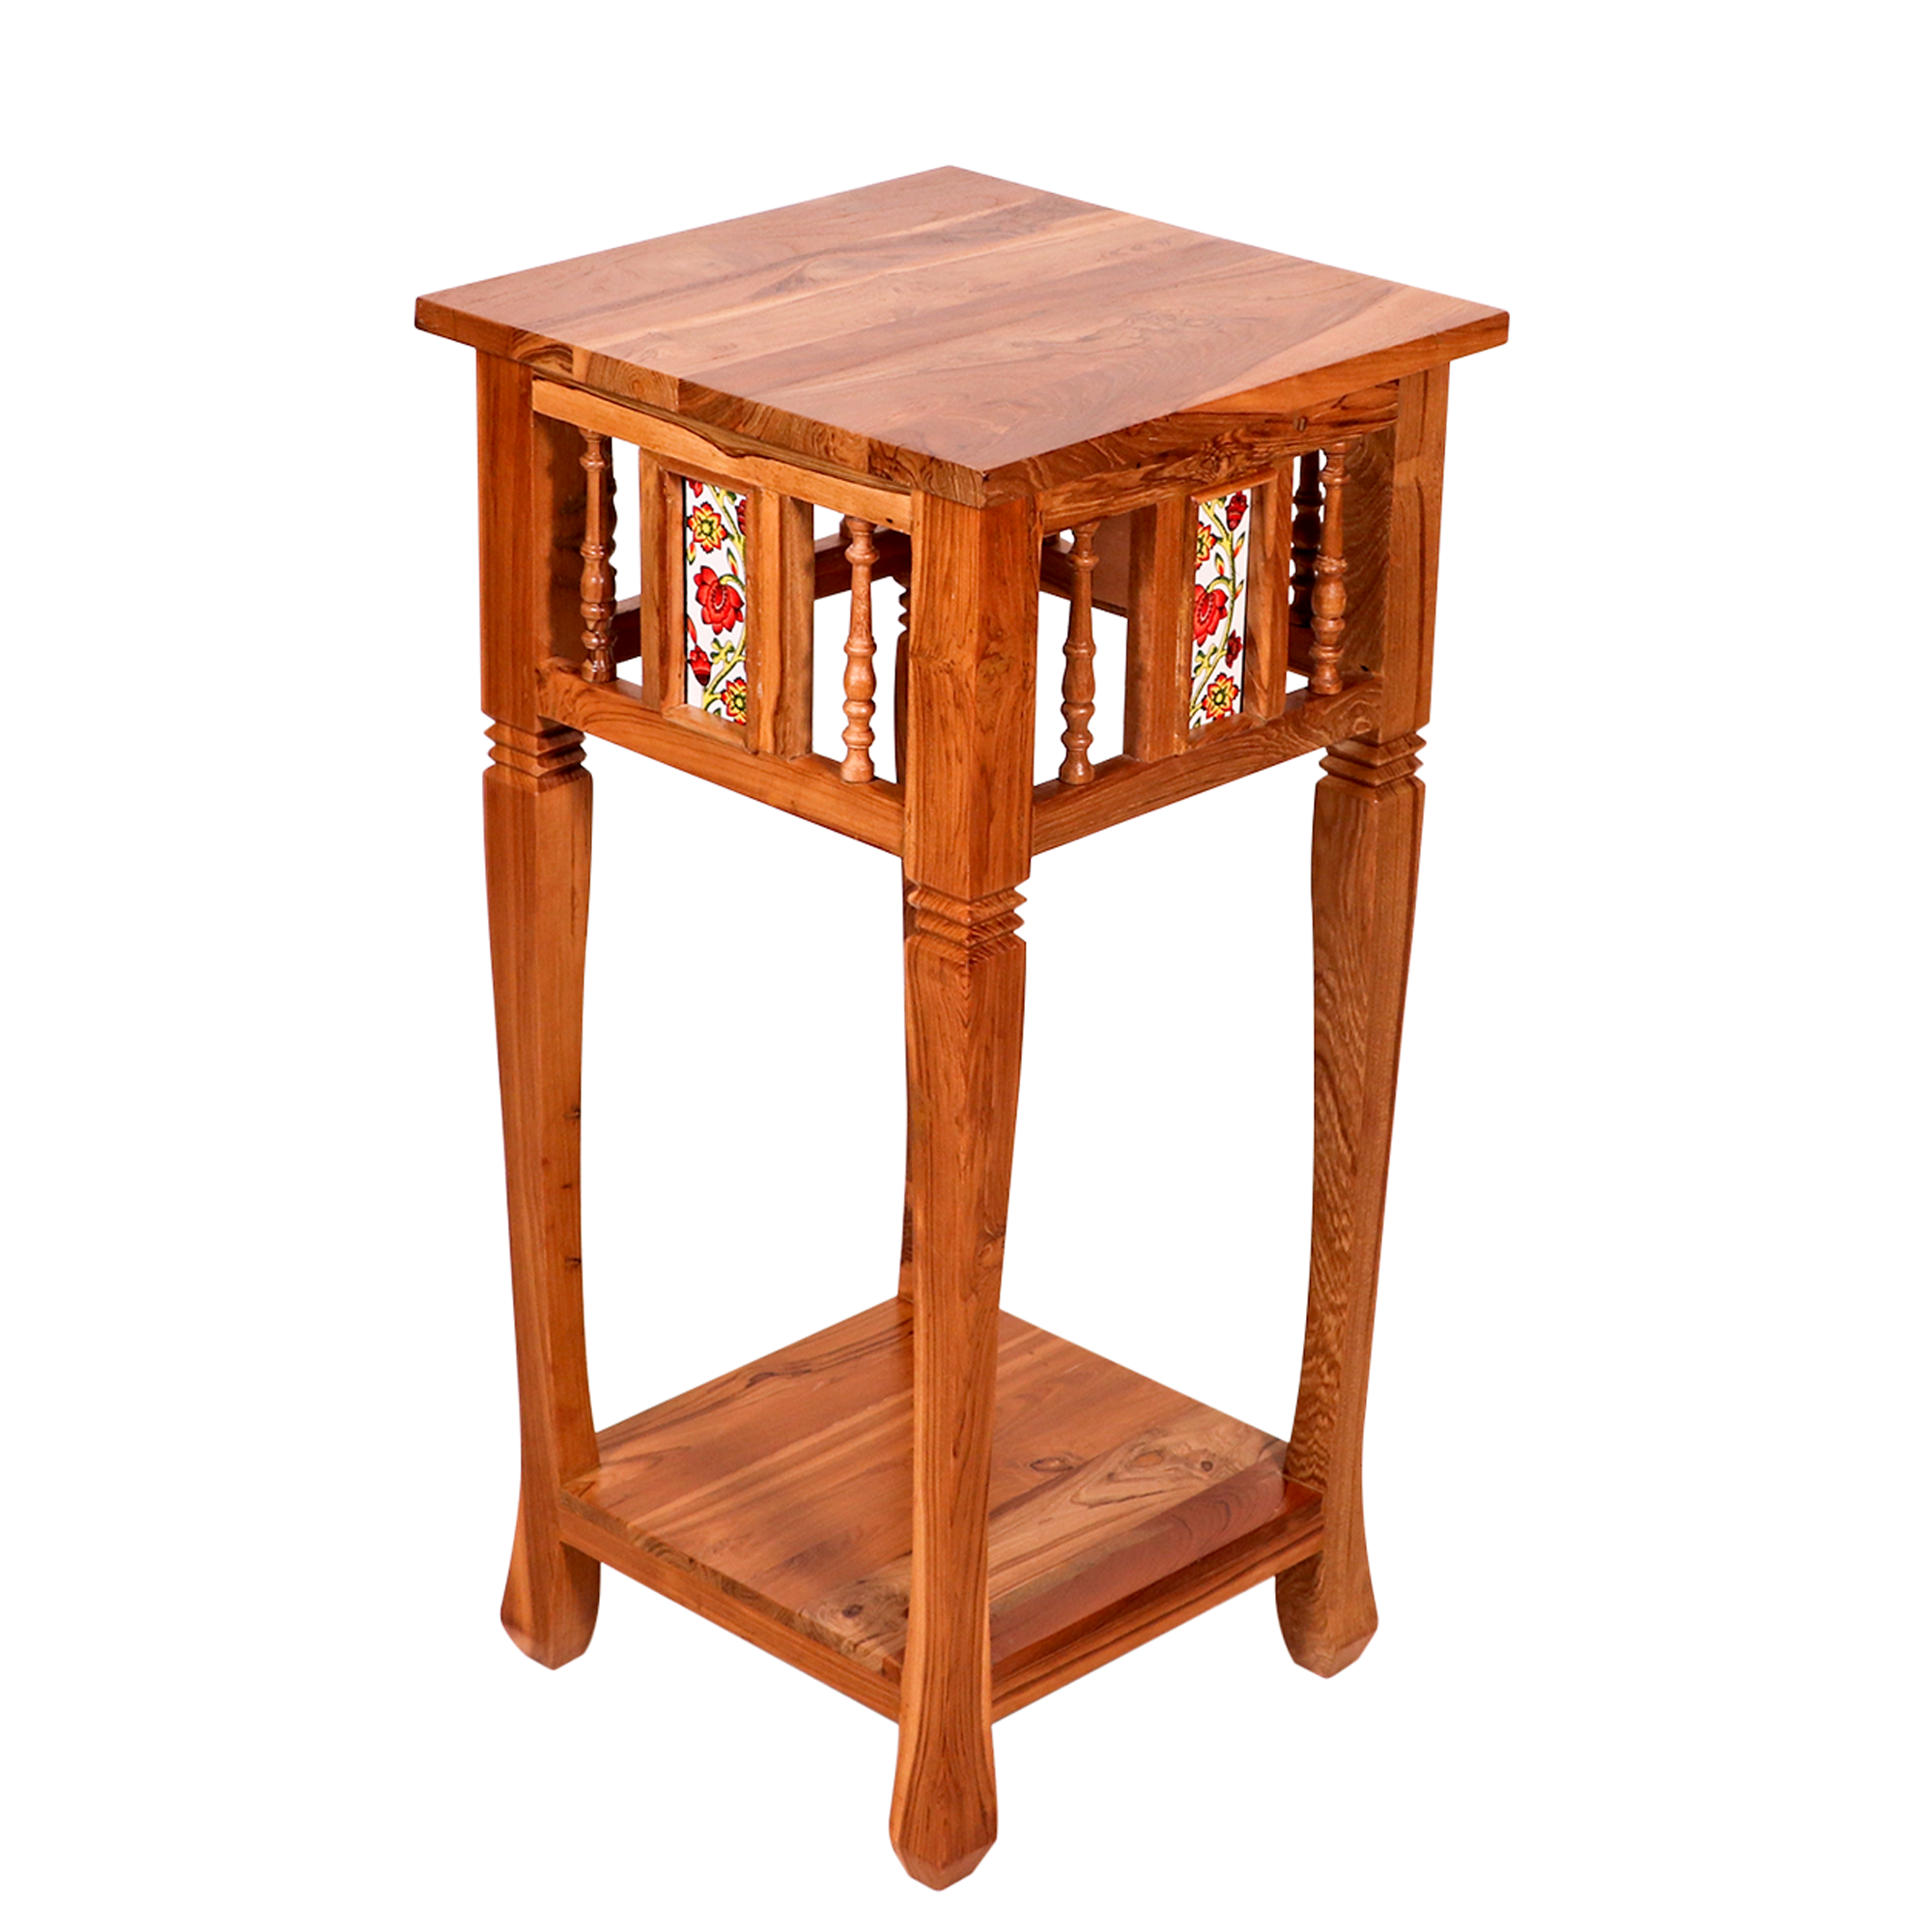 Ceramic tiled teak wood Side corner table with downside shelf End Table